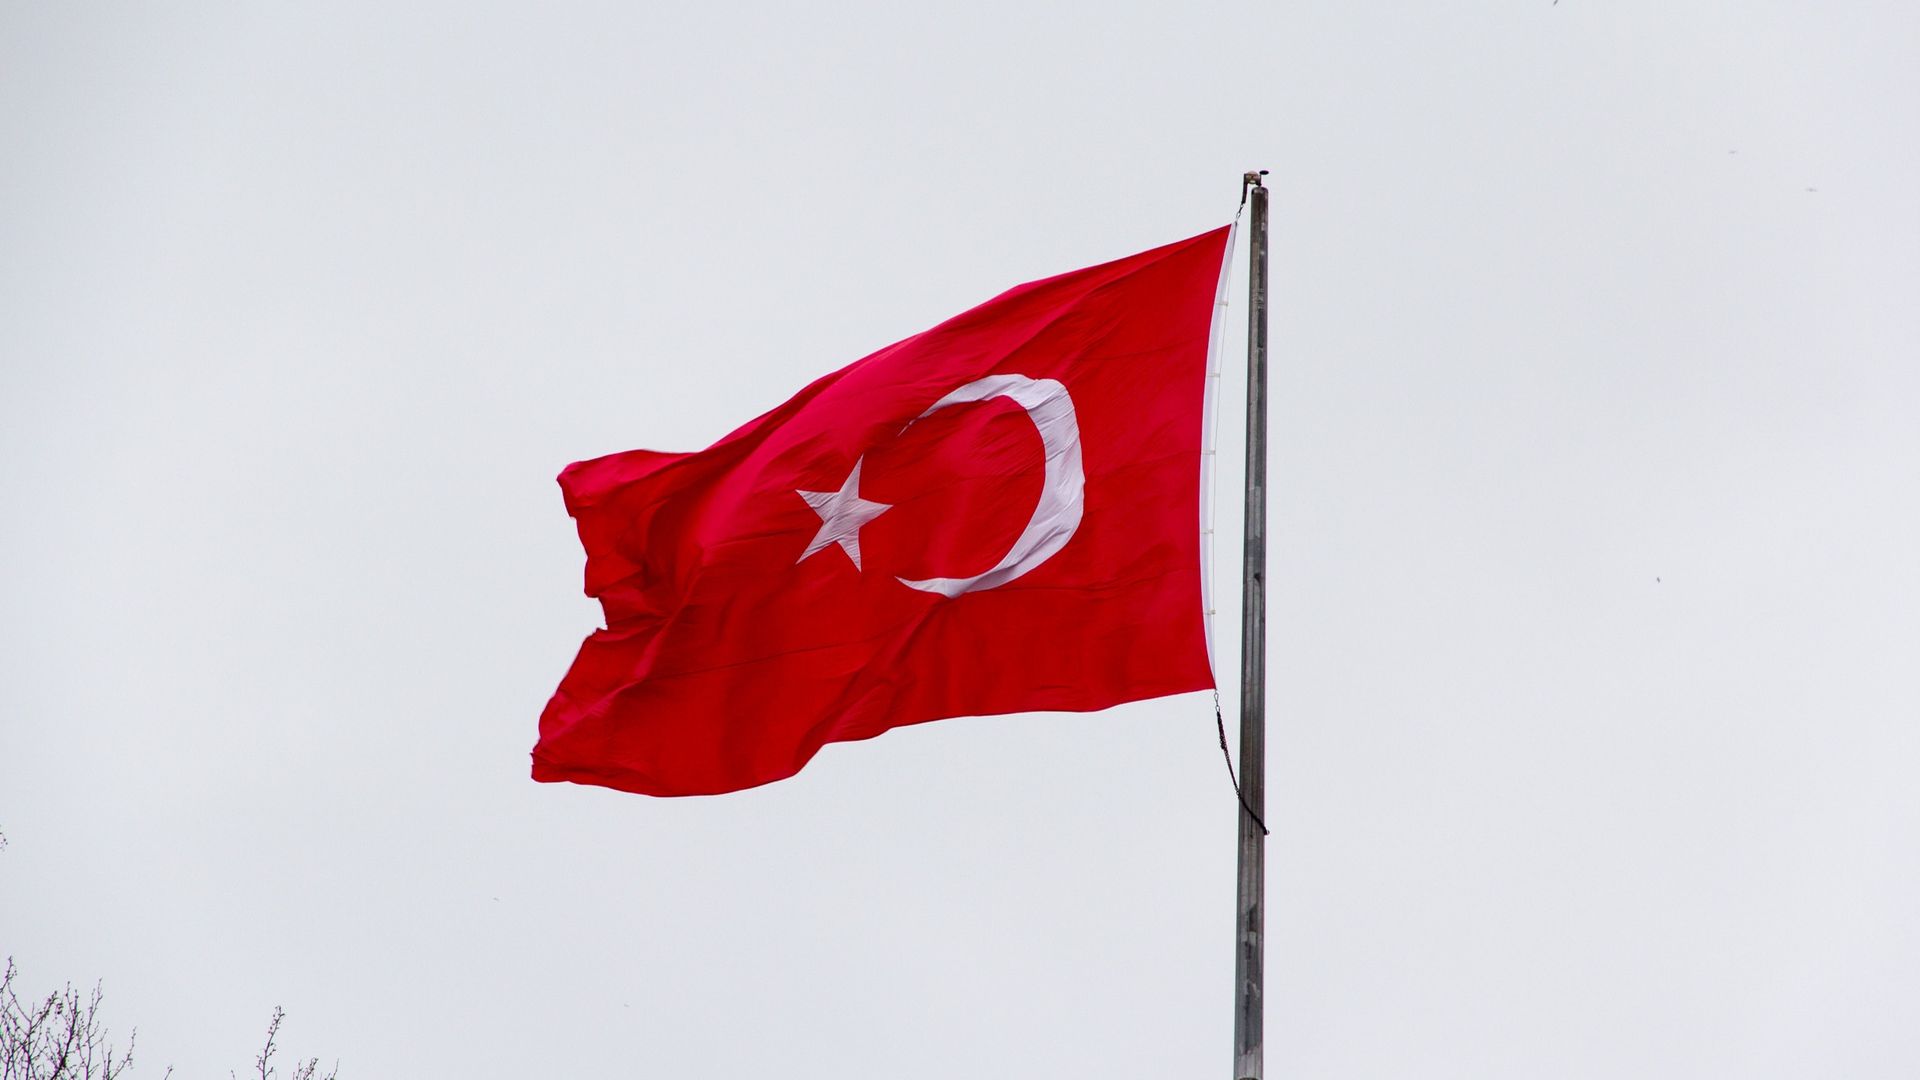 МИД Турции: эксперты обсудят членство Швеции и Финляндии в НАТО в ближайшие дни